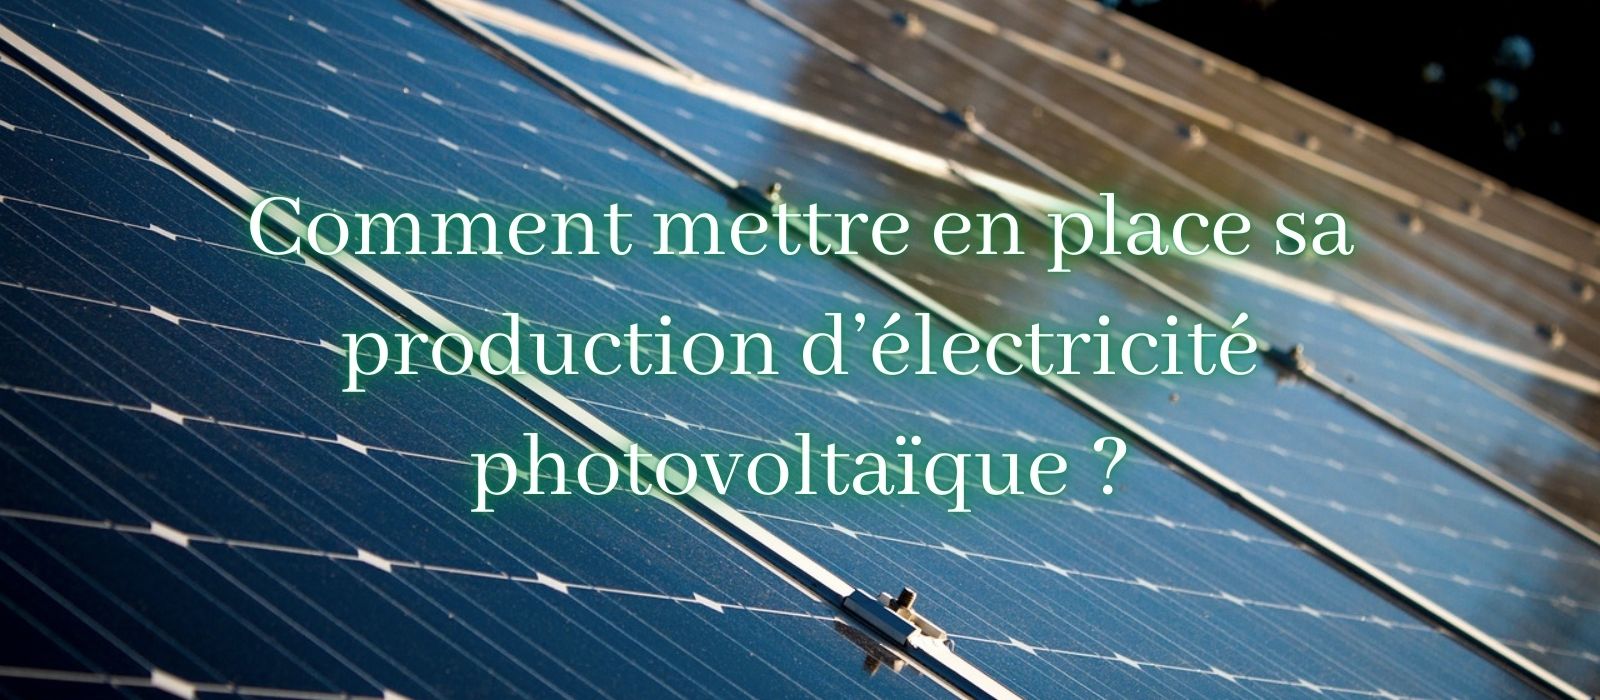 Comment mettre en place sa production d’électricité photovoltaïque